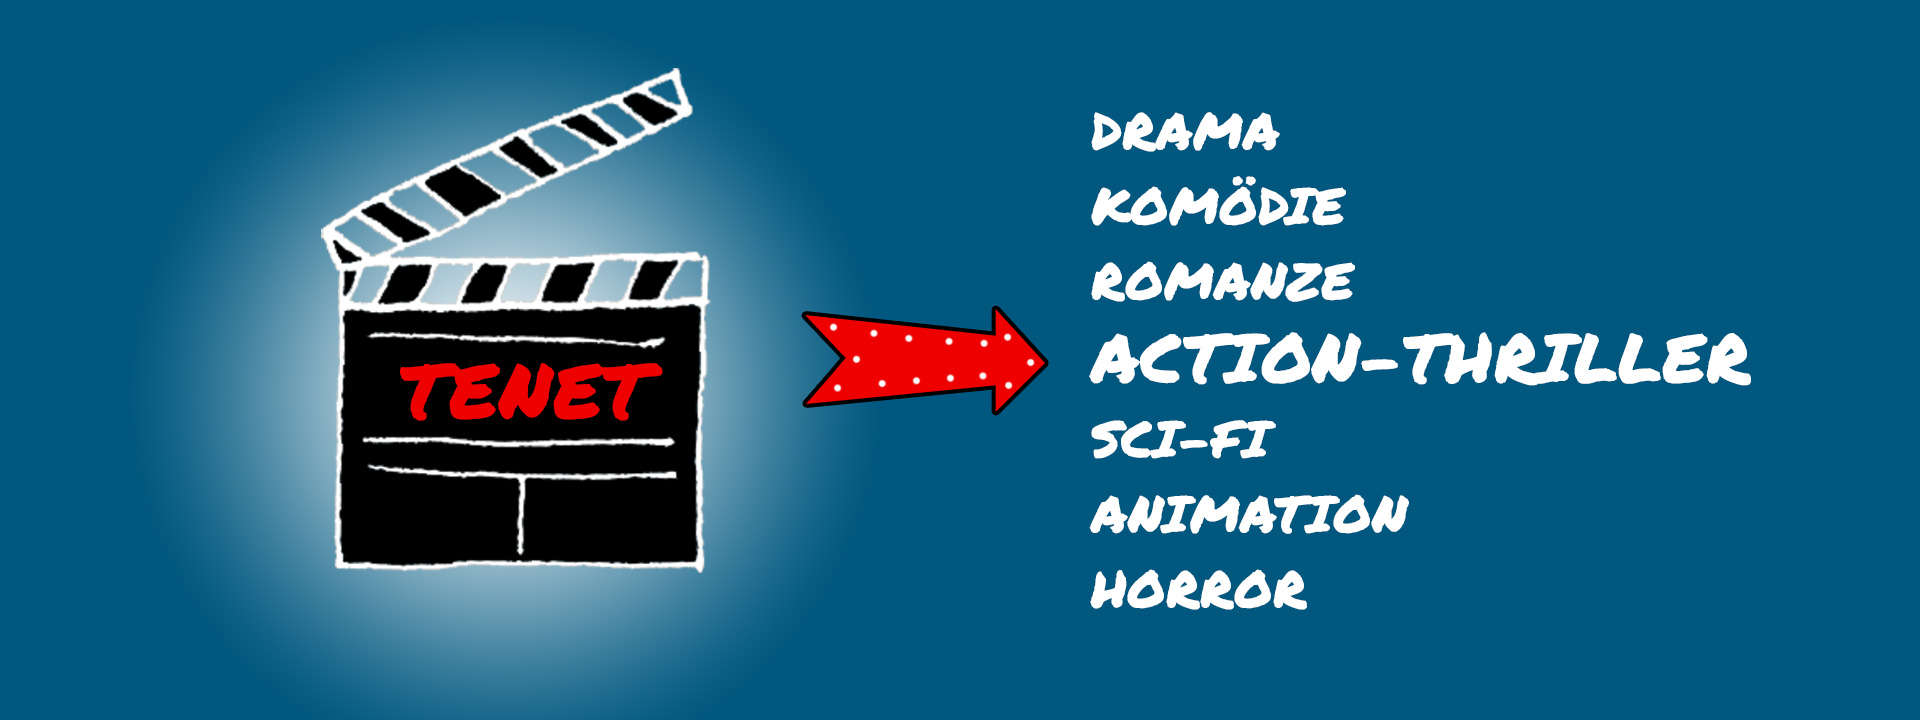 Grafik, die eine Filmklappe mit der Aufschrift "Tenet" zeigt. Daneben zeigt ein roter Leuchtpfeil auf die Kategorie "Action-Thriller".